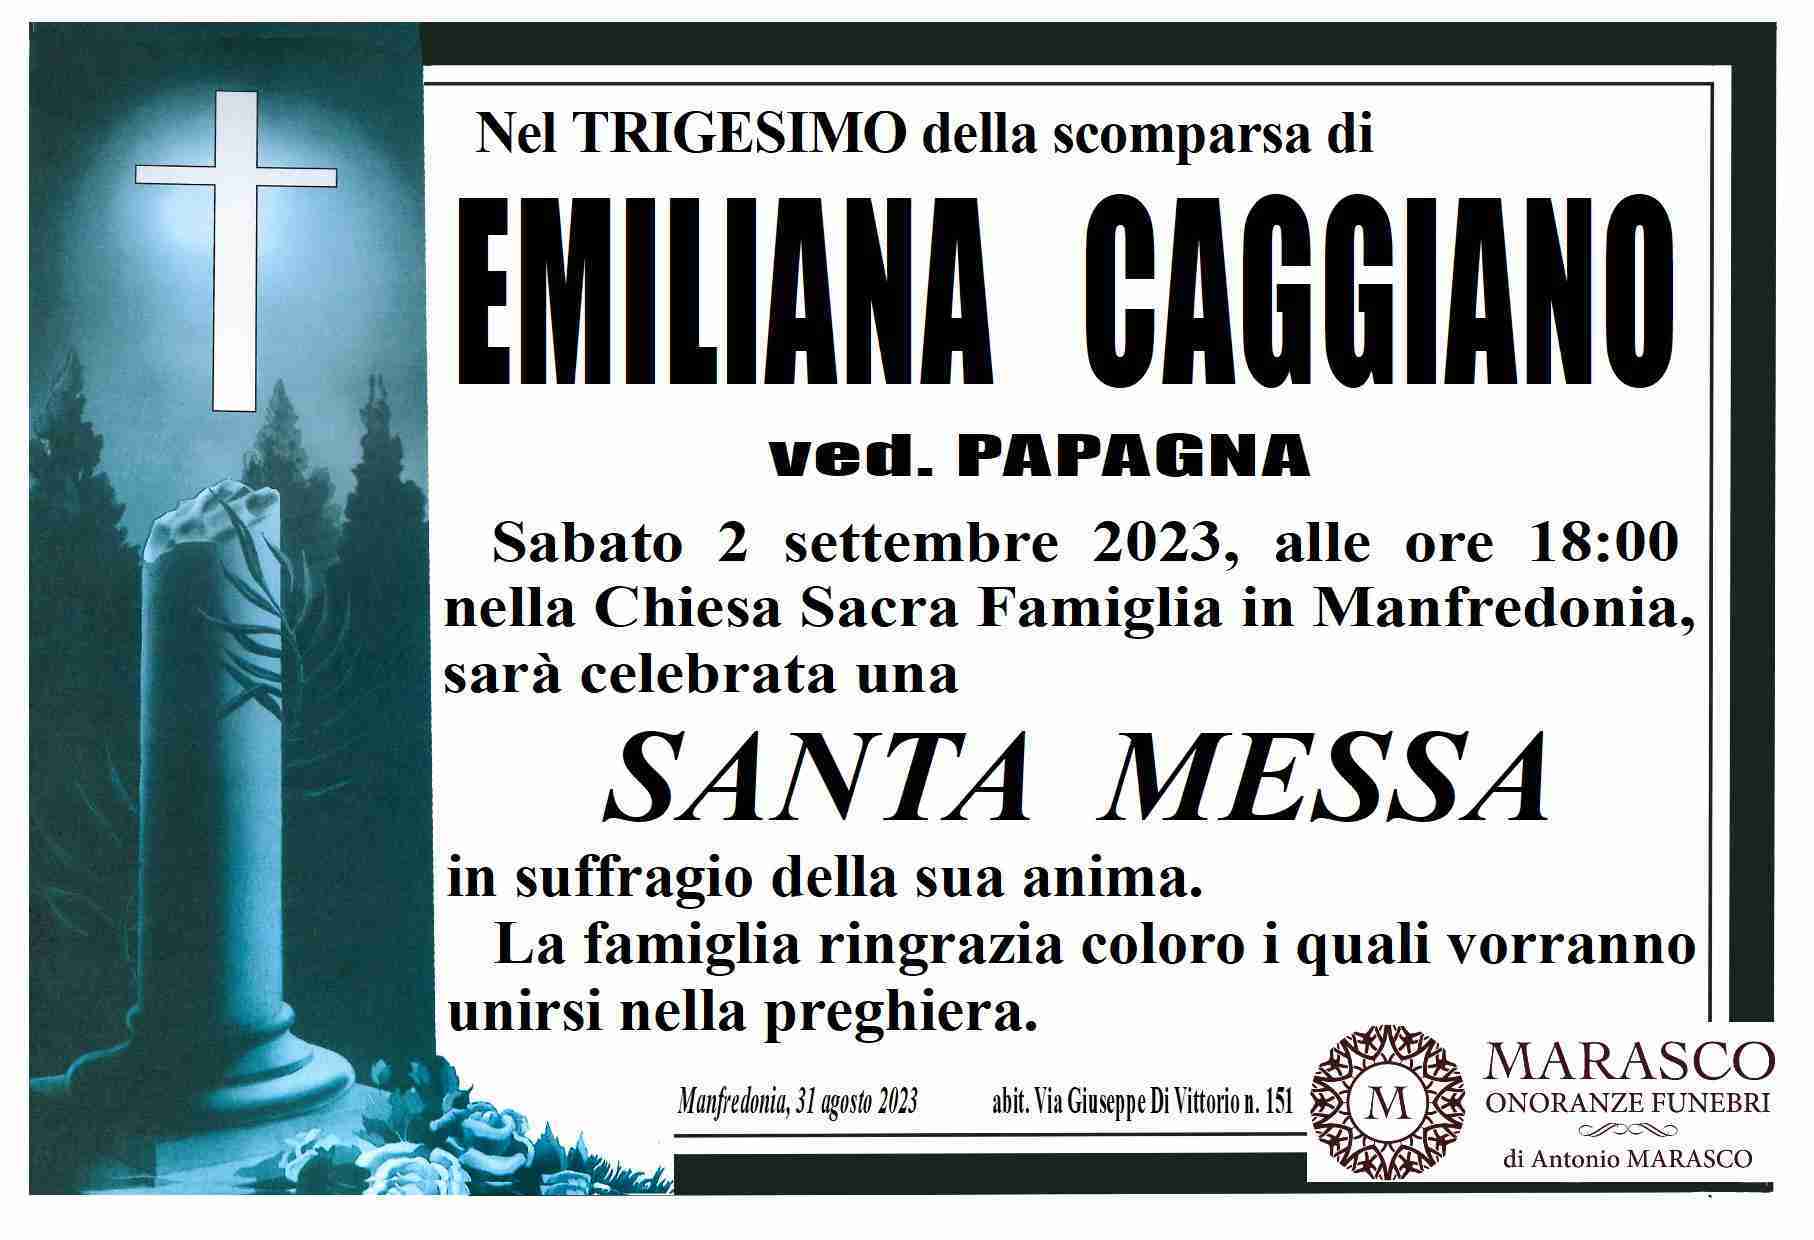 Emiliana Caggiano